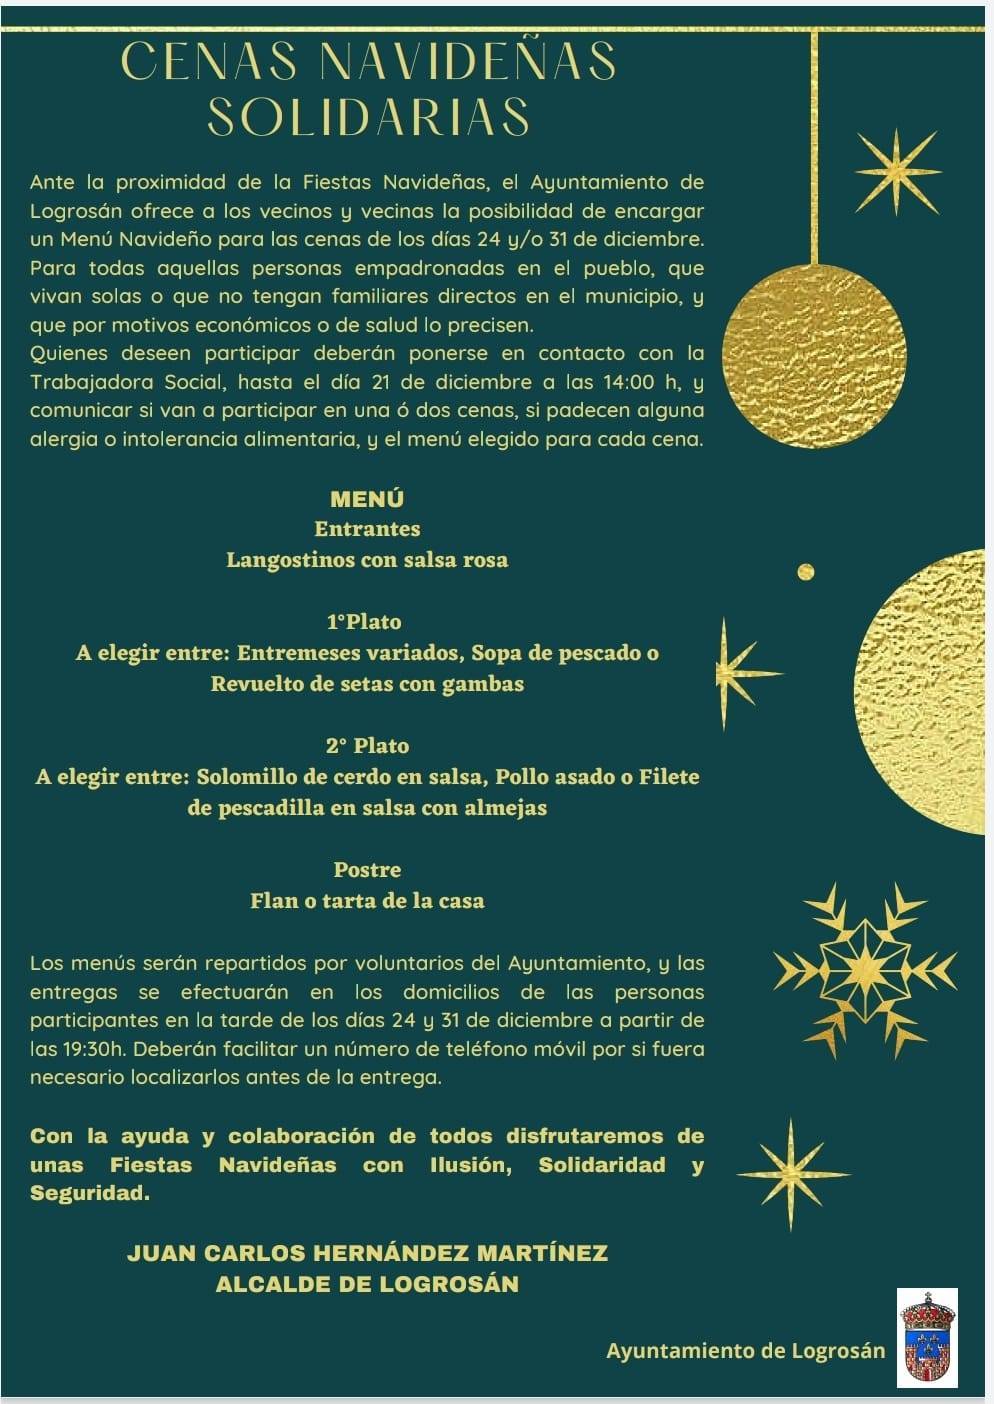 Cenas navideñas solidarias (2021) - Logrosán (Cáceres)